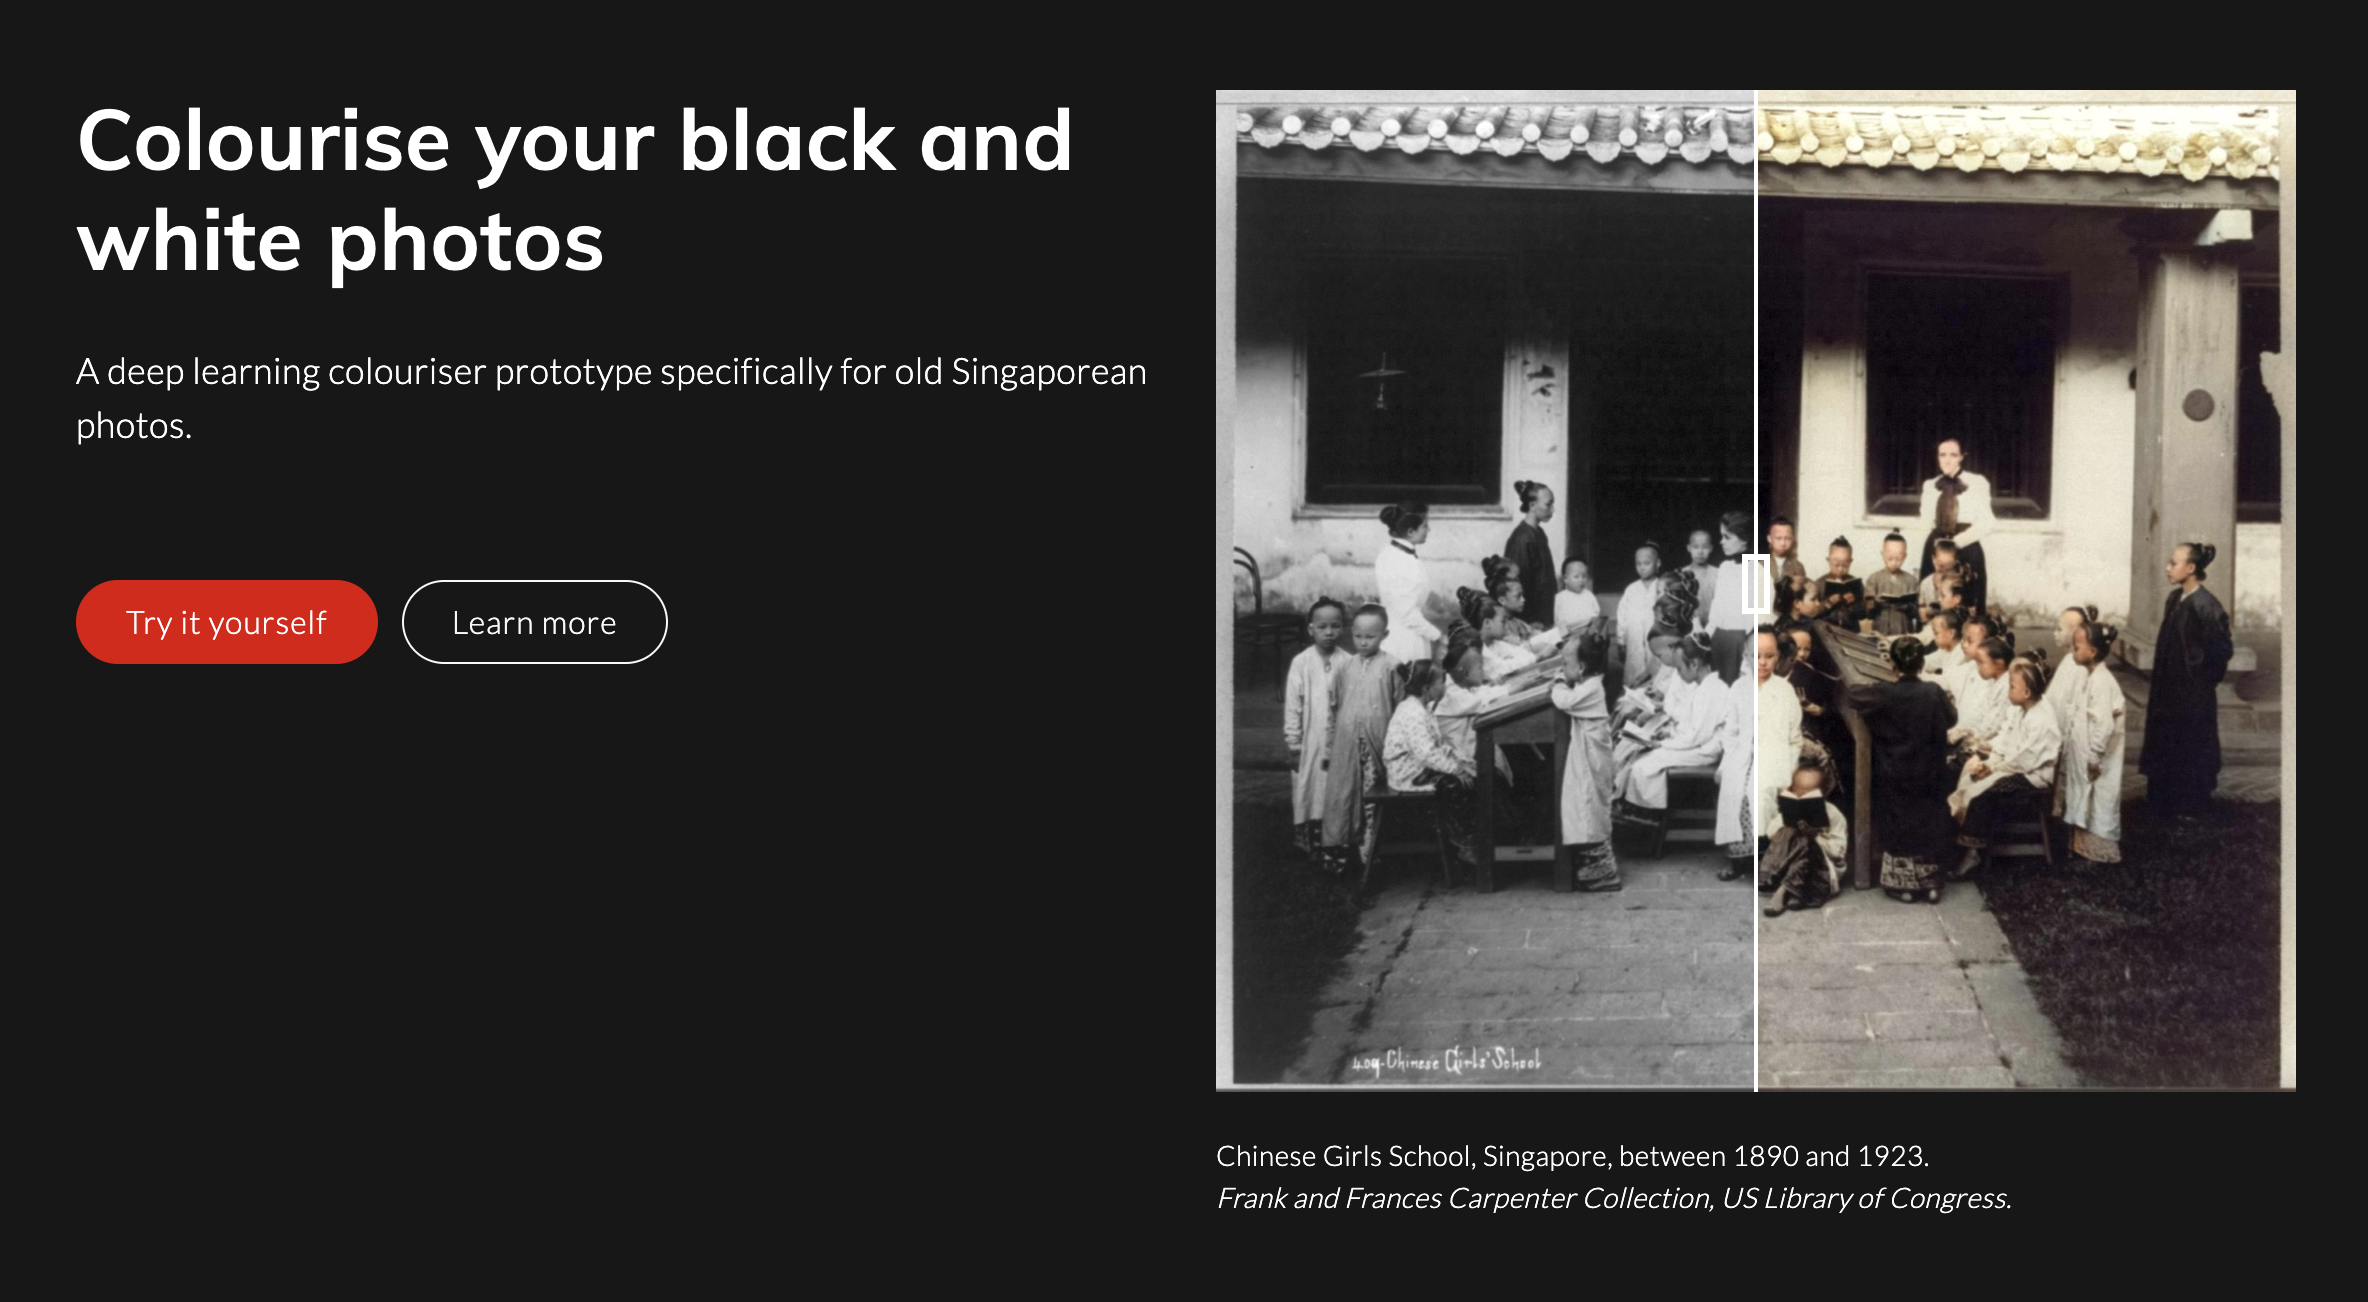 COLOURISE – Colorisez vos photos noirs et blancs